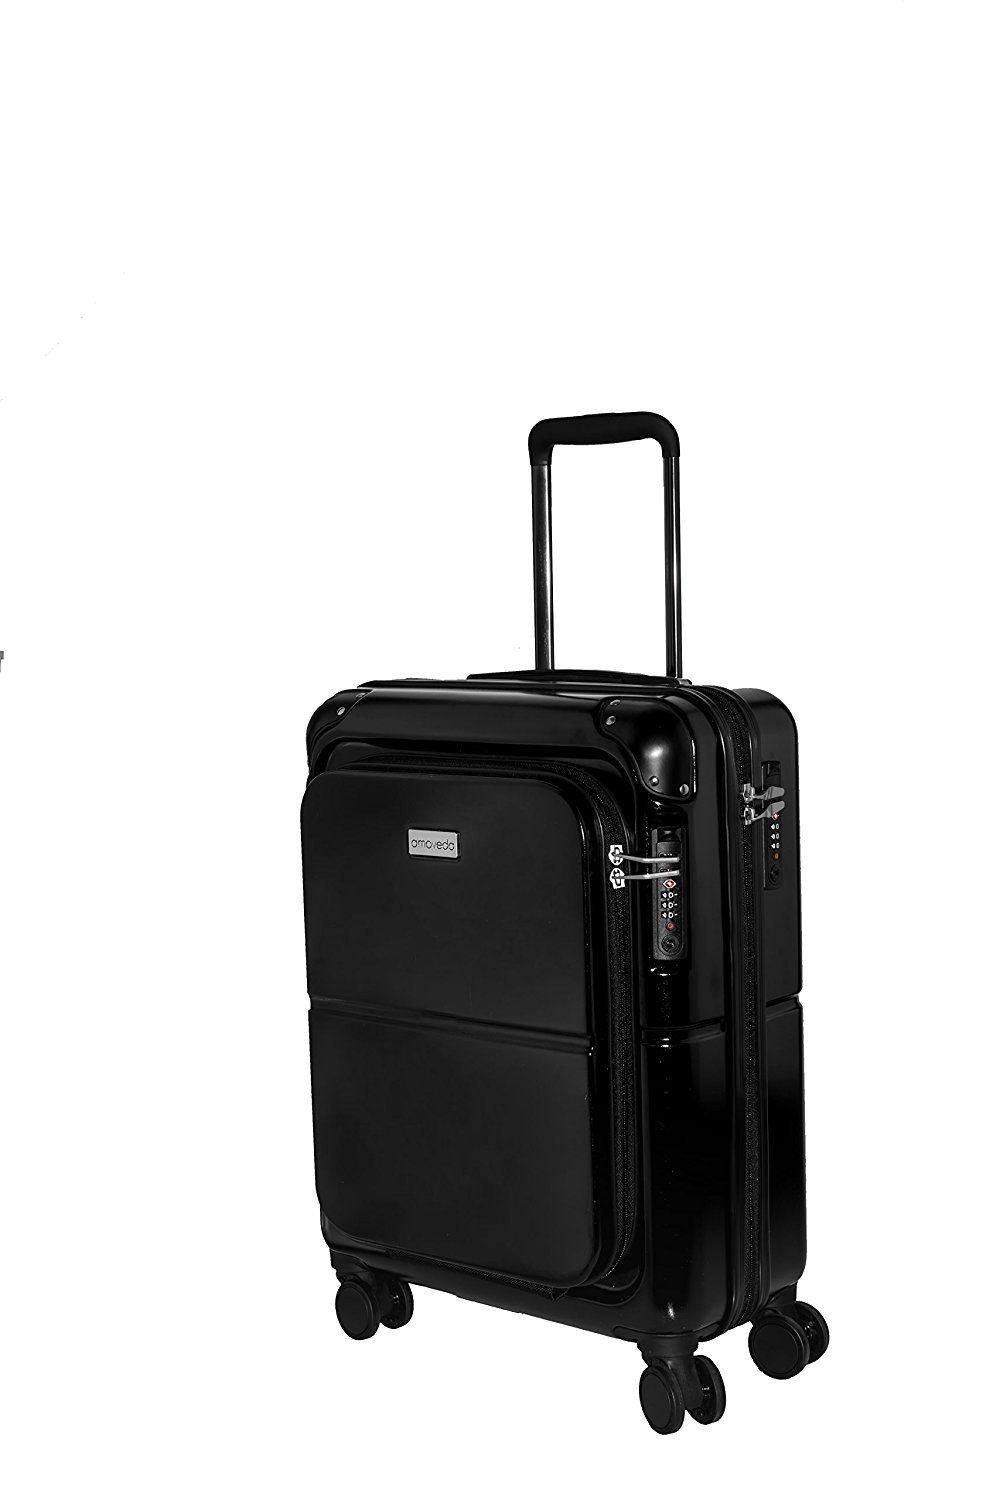 Amoveda Handgepäck Trolley Koffer mit Waage im Griff, Powerbank,TSA, Notebookfach, 4 Rollen, Erweiterbar, 55cm | 100% PC Hartschale | schwarz